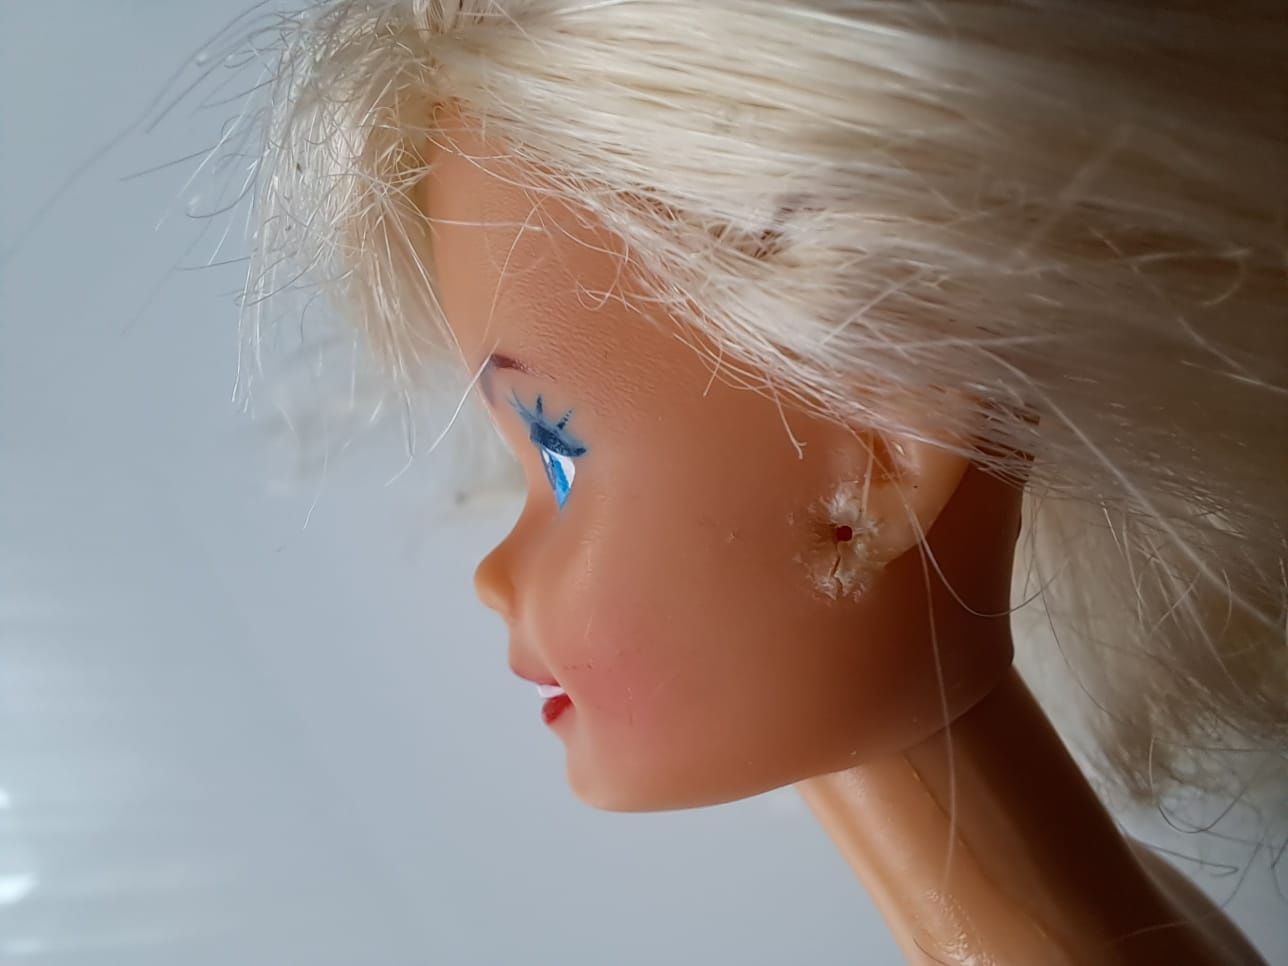 Lalka Barbie w stroju kąpielowym